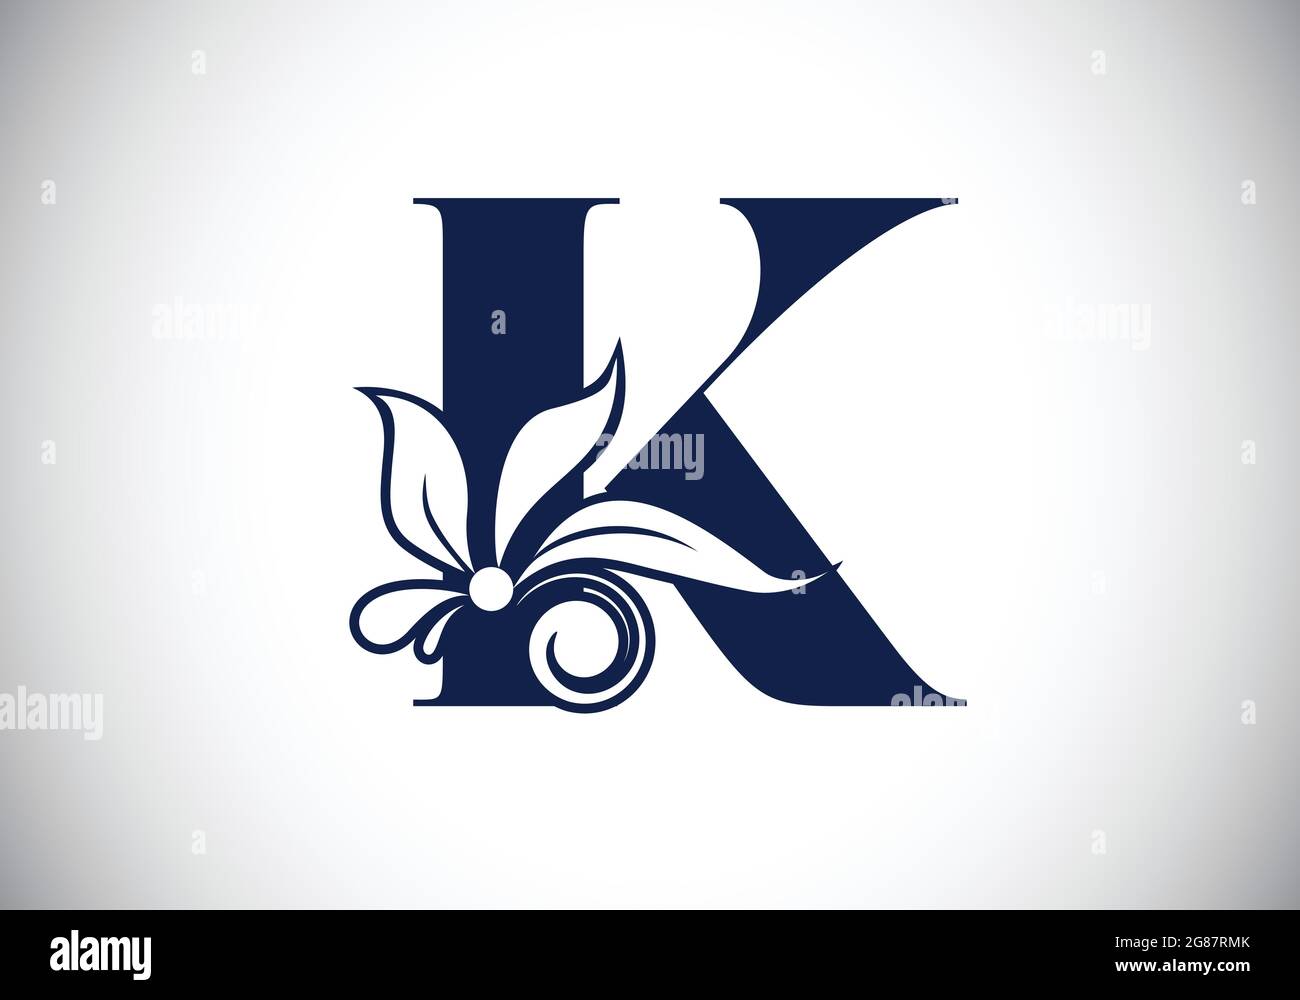 Lettre K du monogramme floral initiale avec éléments botaniques. Emblème de police. Illustration vectorielle pour les invitations de mariage, les cartes de vœux, les logos Illustration de Vecteur